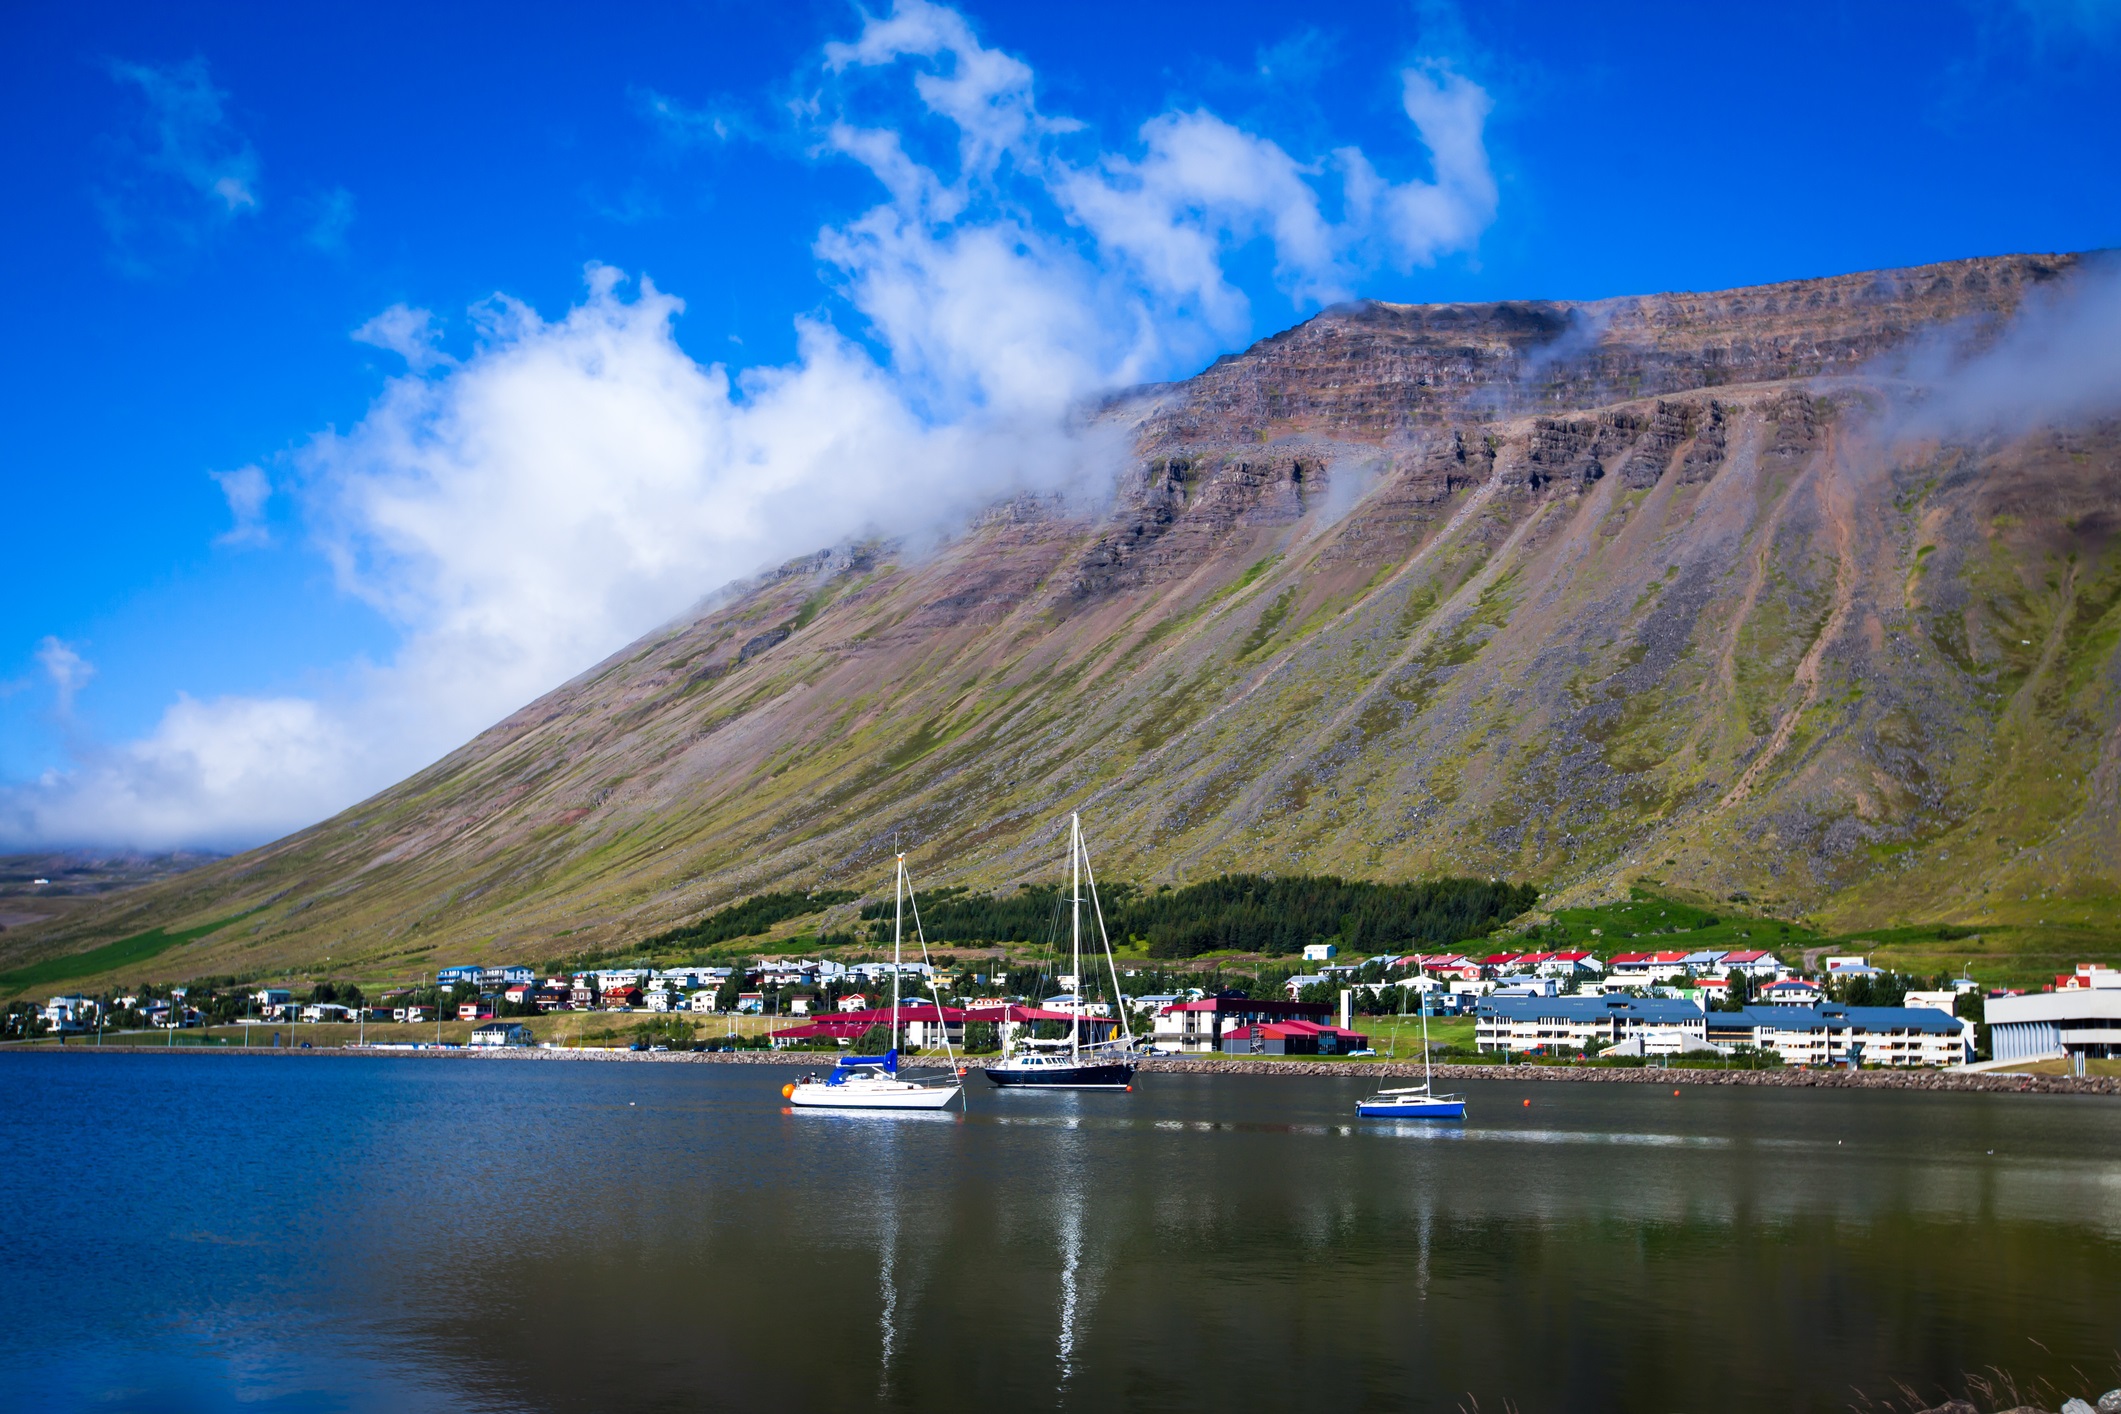 Исландия оглавява класацията за най-здраво население. Според диетолозите причината за това е стриктната политика на правителството на контрол на храните, както и на добивите на прясна риба. Рибата играе ключова роля в живота в страната - сьомгата и херингата са най-често консумираните риби в страната, като точно те съдържат най-големи количества Омега - 3 мазнини, които забавят освобождаването на въглехидрати в организма.